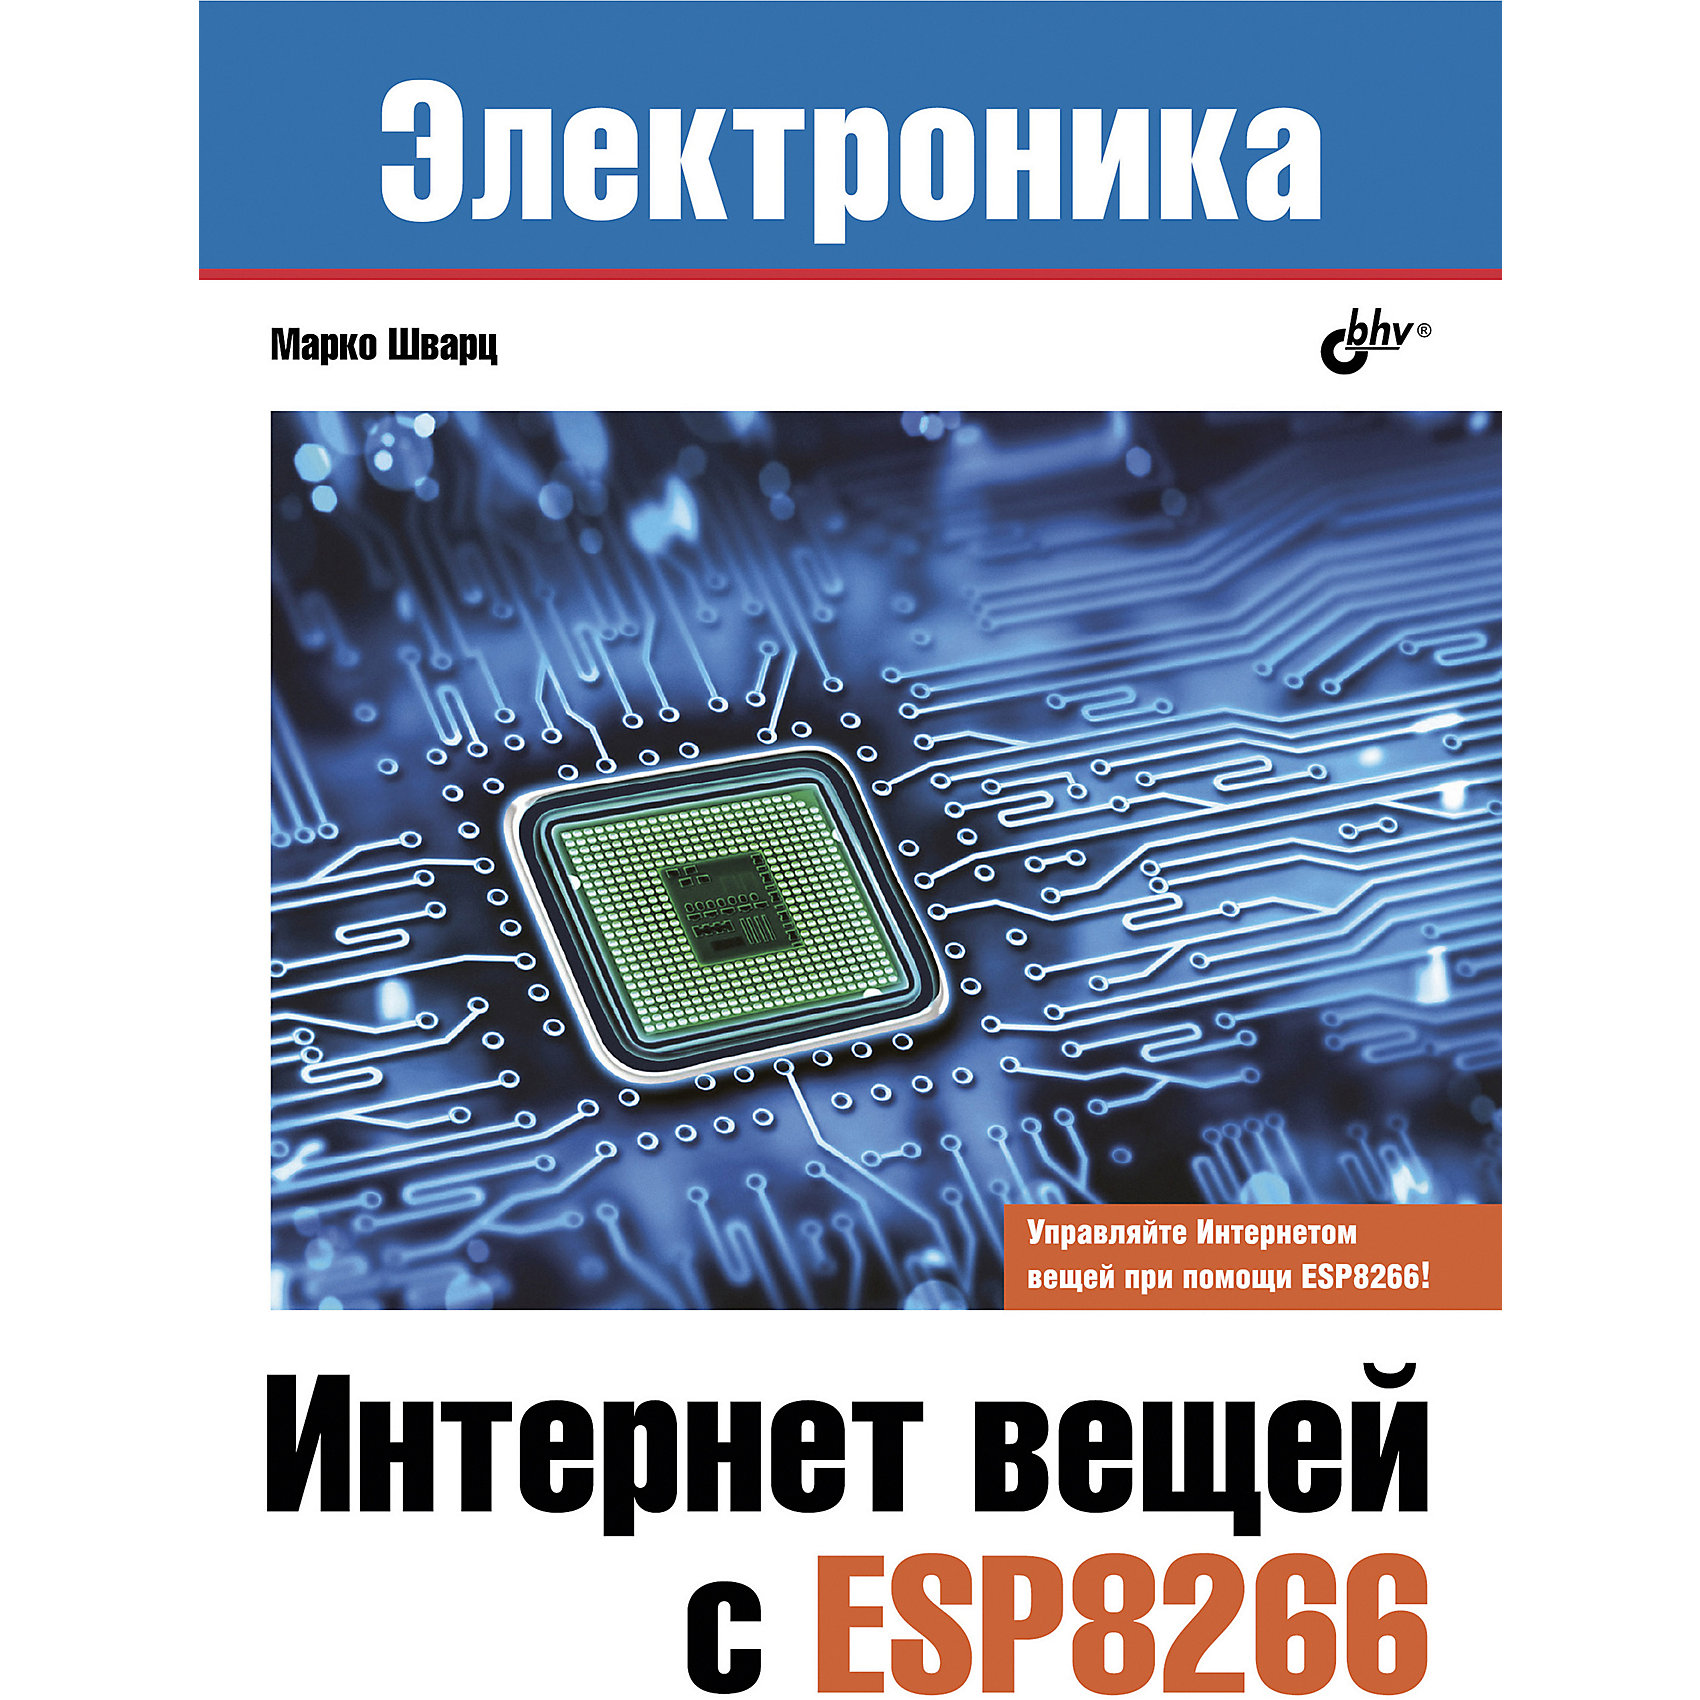 Набор для экспериментов "Интернет вещей" с контроллером NodeMCU ESP8266 Bhv 10266222